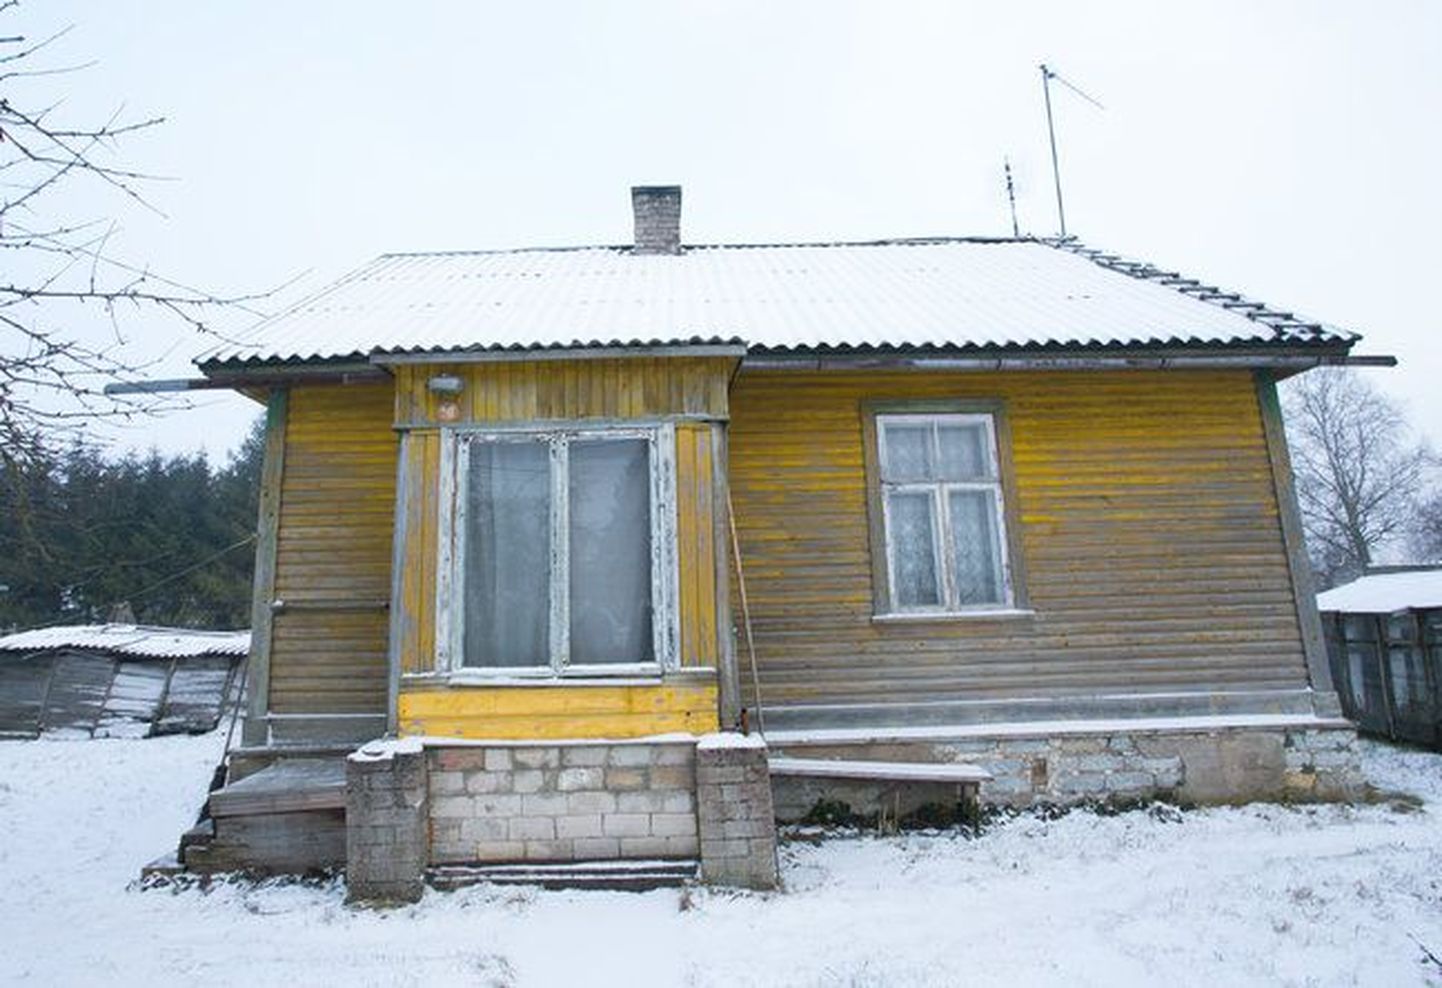 Дом, где была убита пожилая женщина.